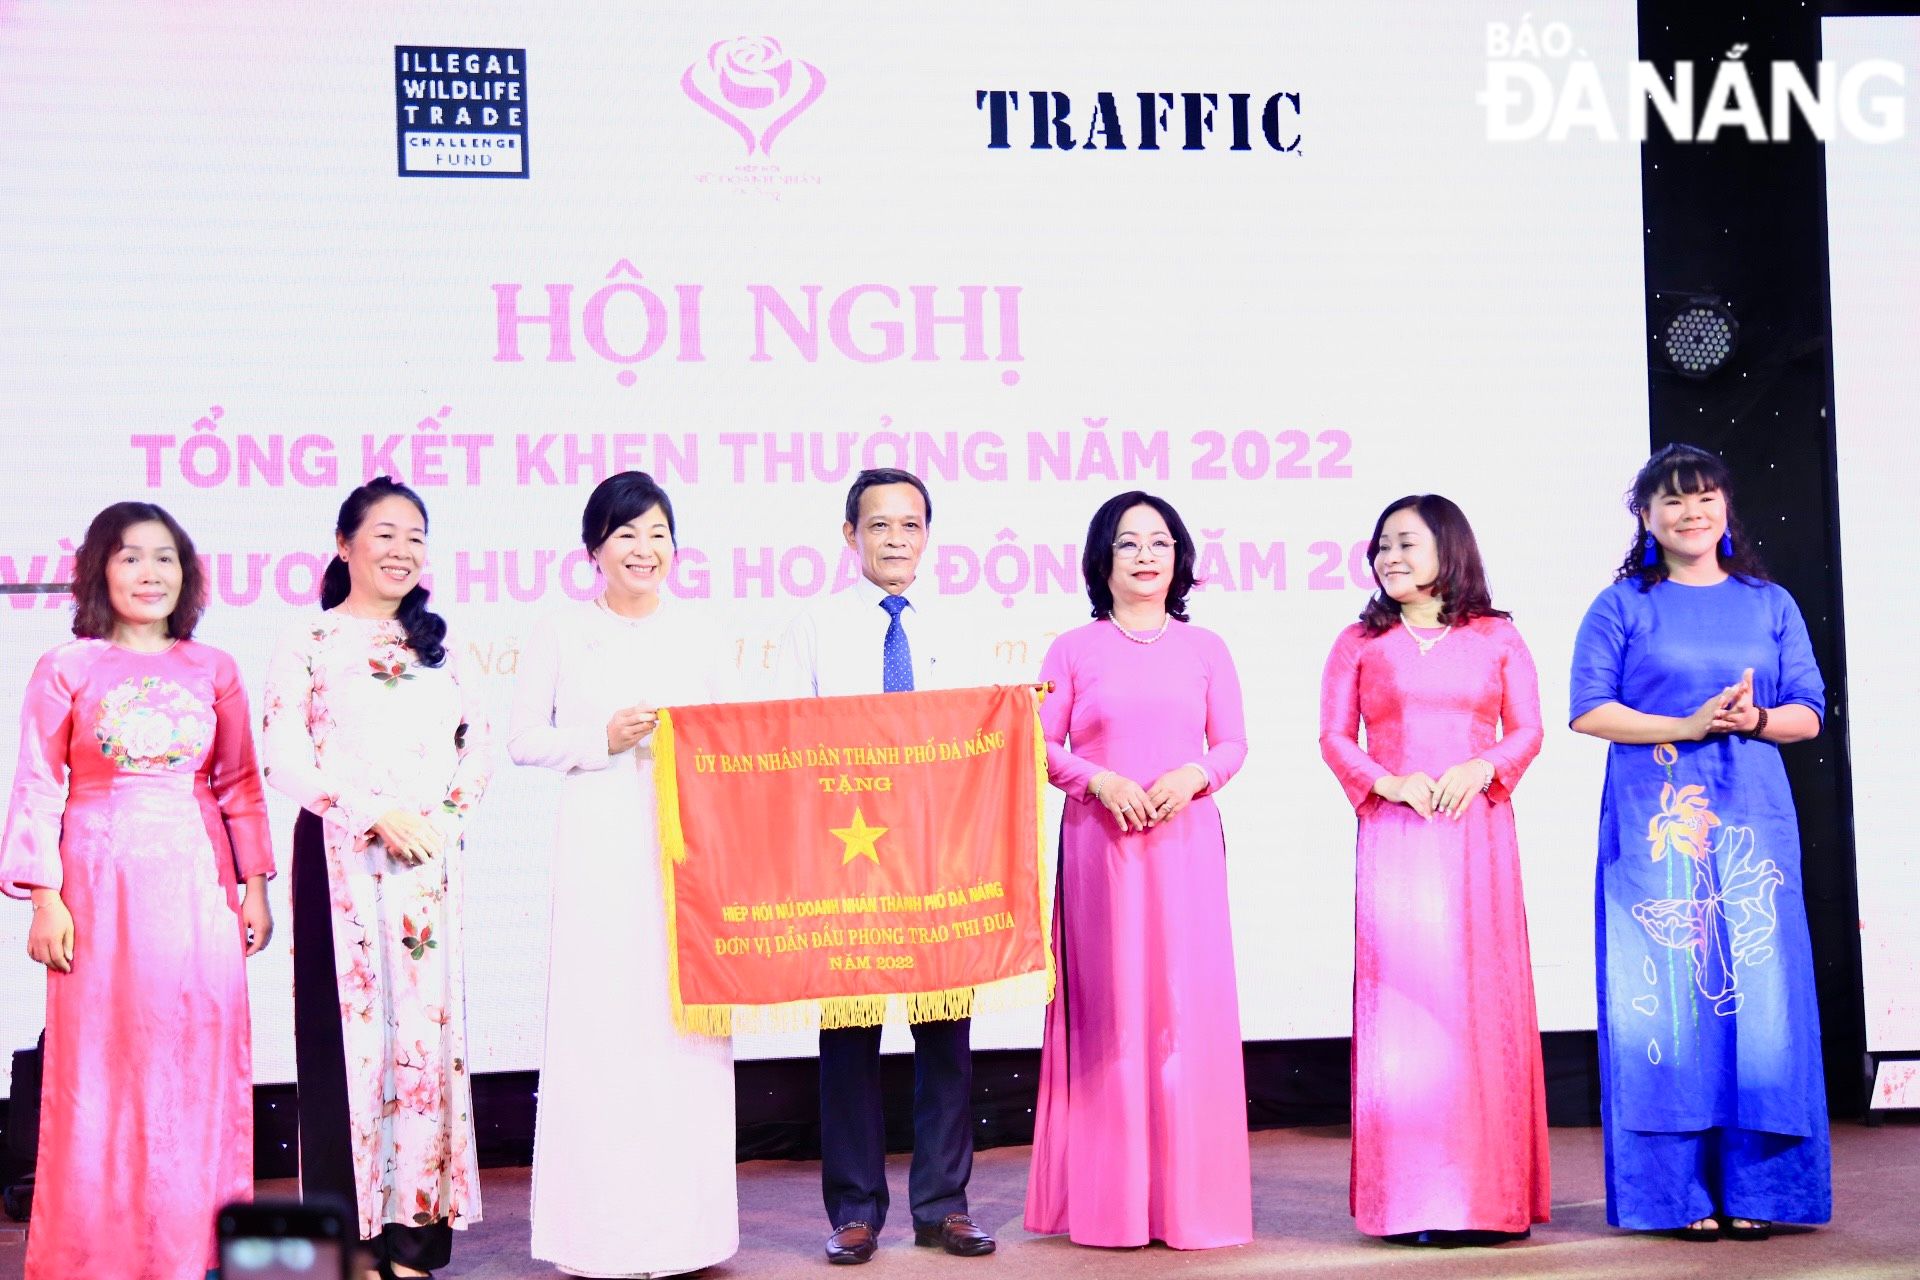 Hiệp hội Nữ doanh nhân Đà Nẵng vinh dự được nhận Cờ thi đua do UBND thành phố trao tặng.